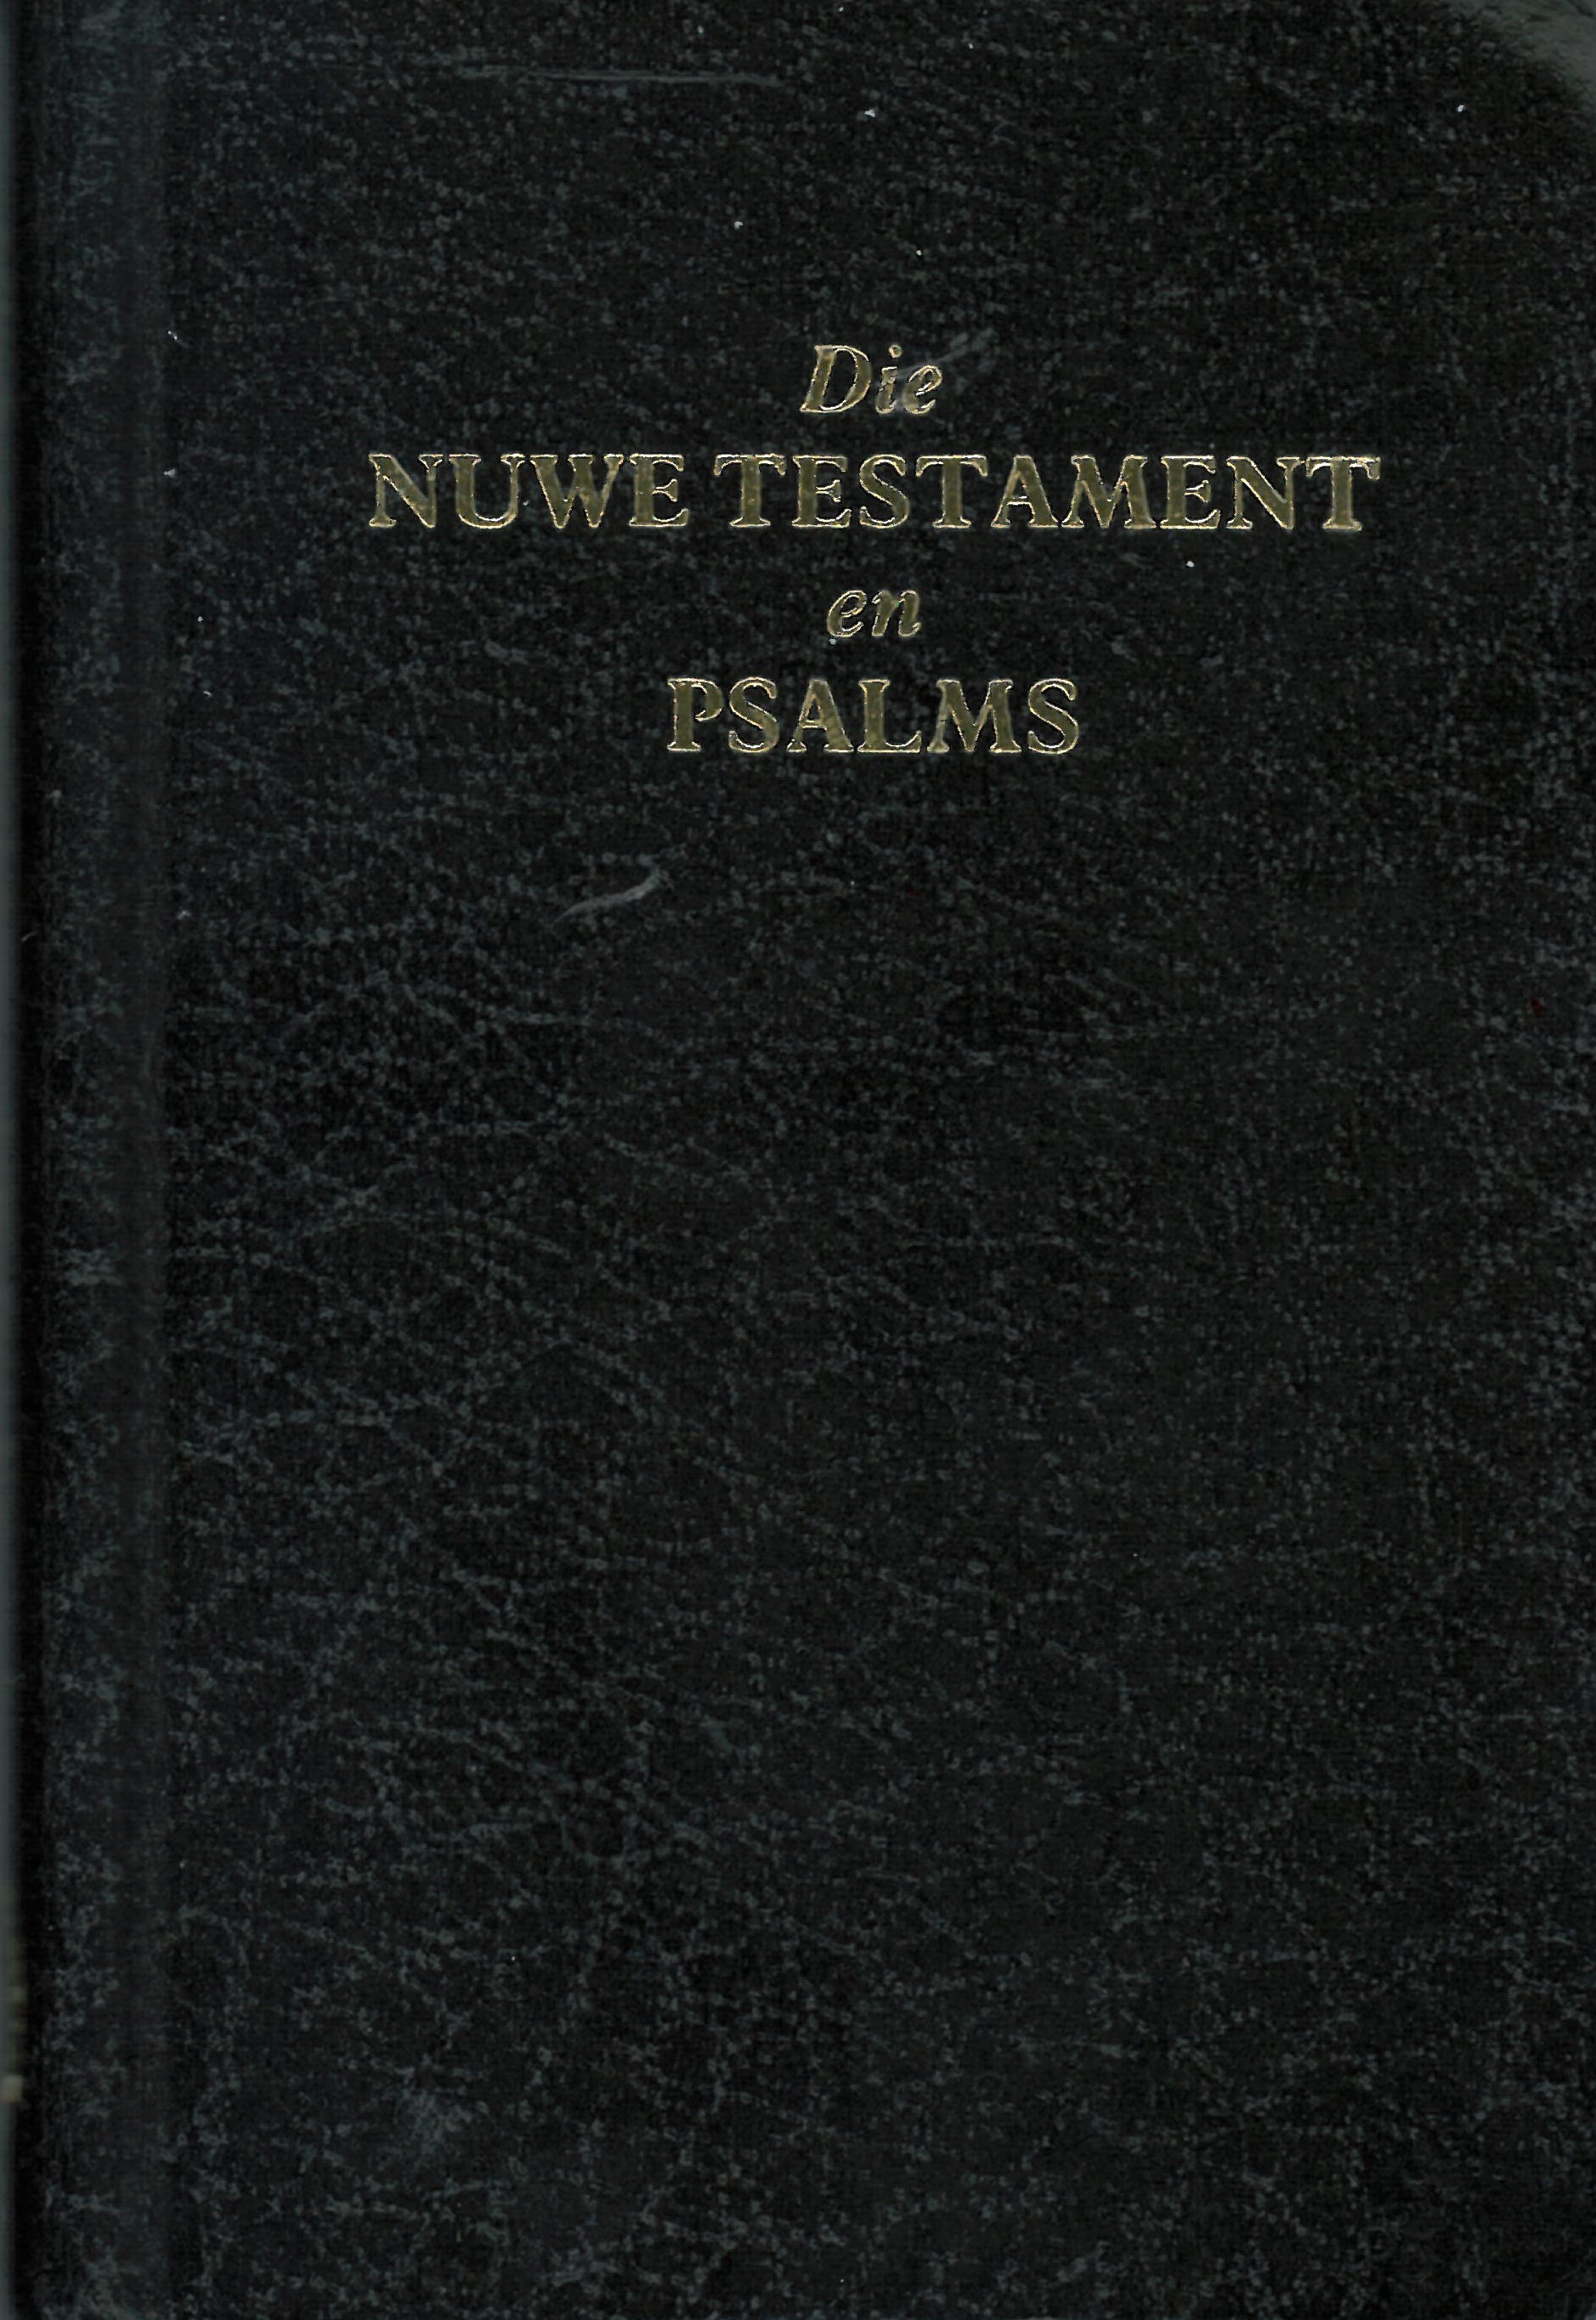 Afrikaans, Nouveau Testament & Psaumes, Broché